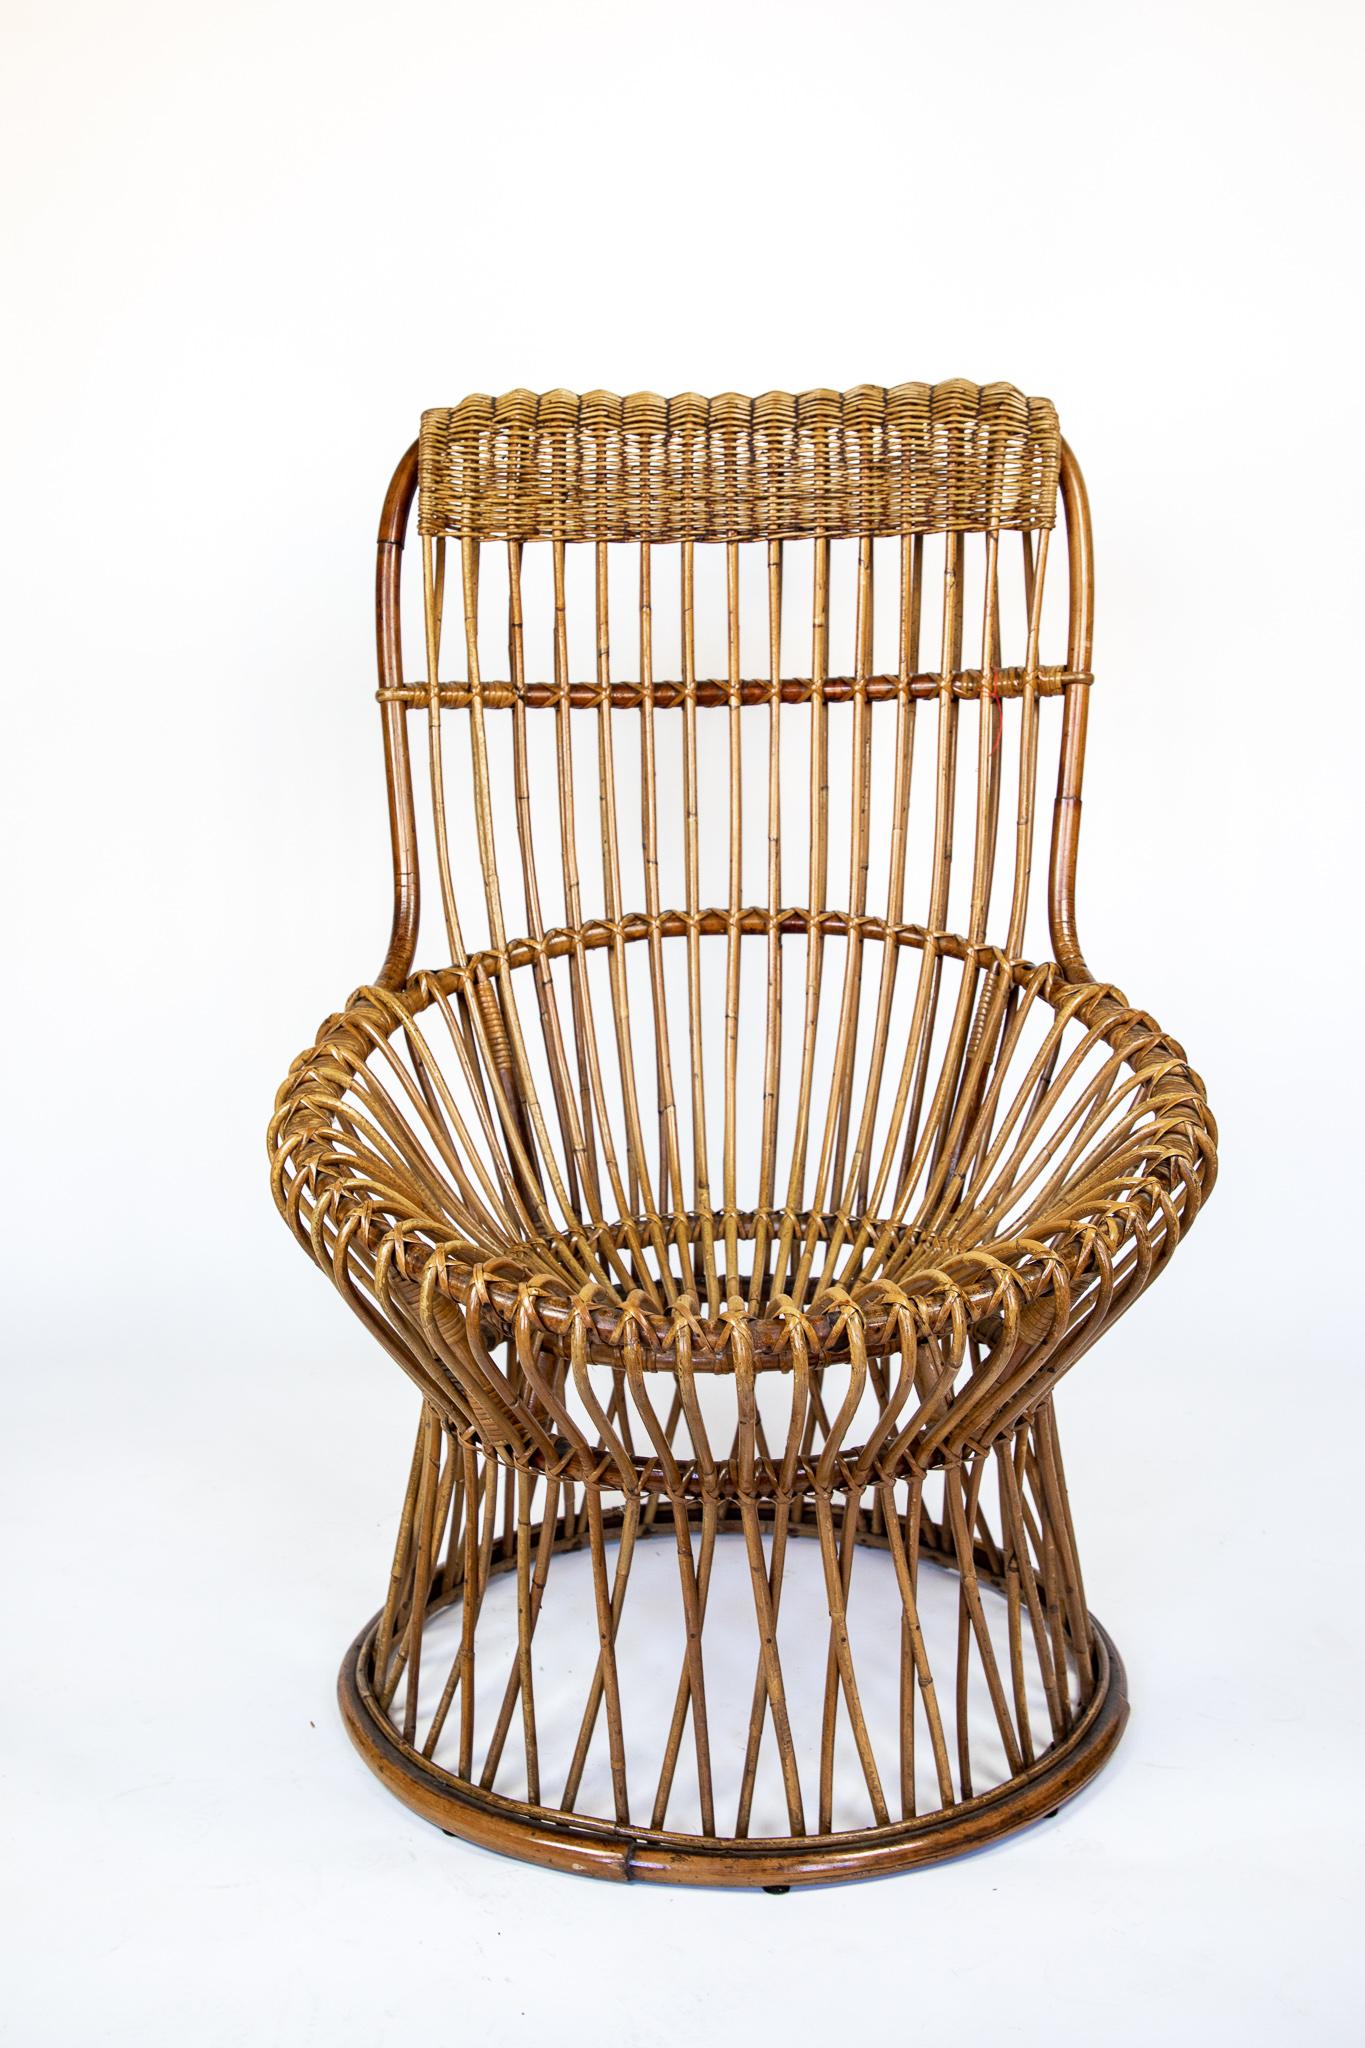 Mid Century Modern Lounge Chair aus Rattangeflecht, Italien 1950er Jahre.

Schöner italienischer Rattanstuhl aus der Mitte des Jahrhunderts, entworfen in den 1950er Jahren. Dieser Loungesessel wurde geschaffen, um Dinge und Menschen 